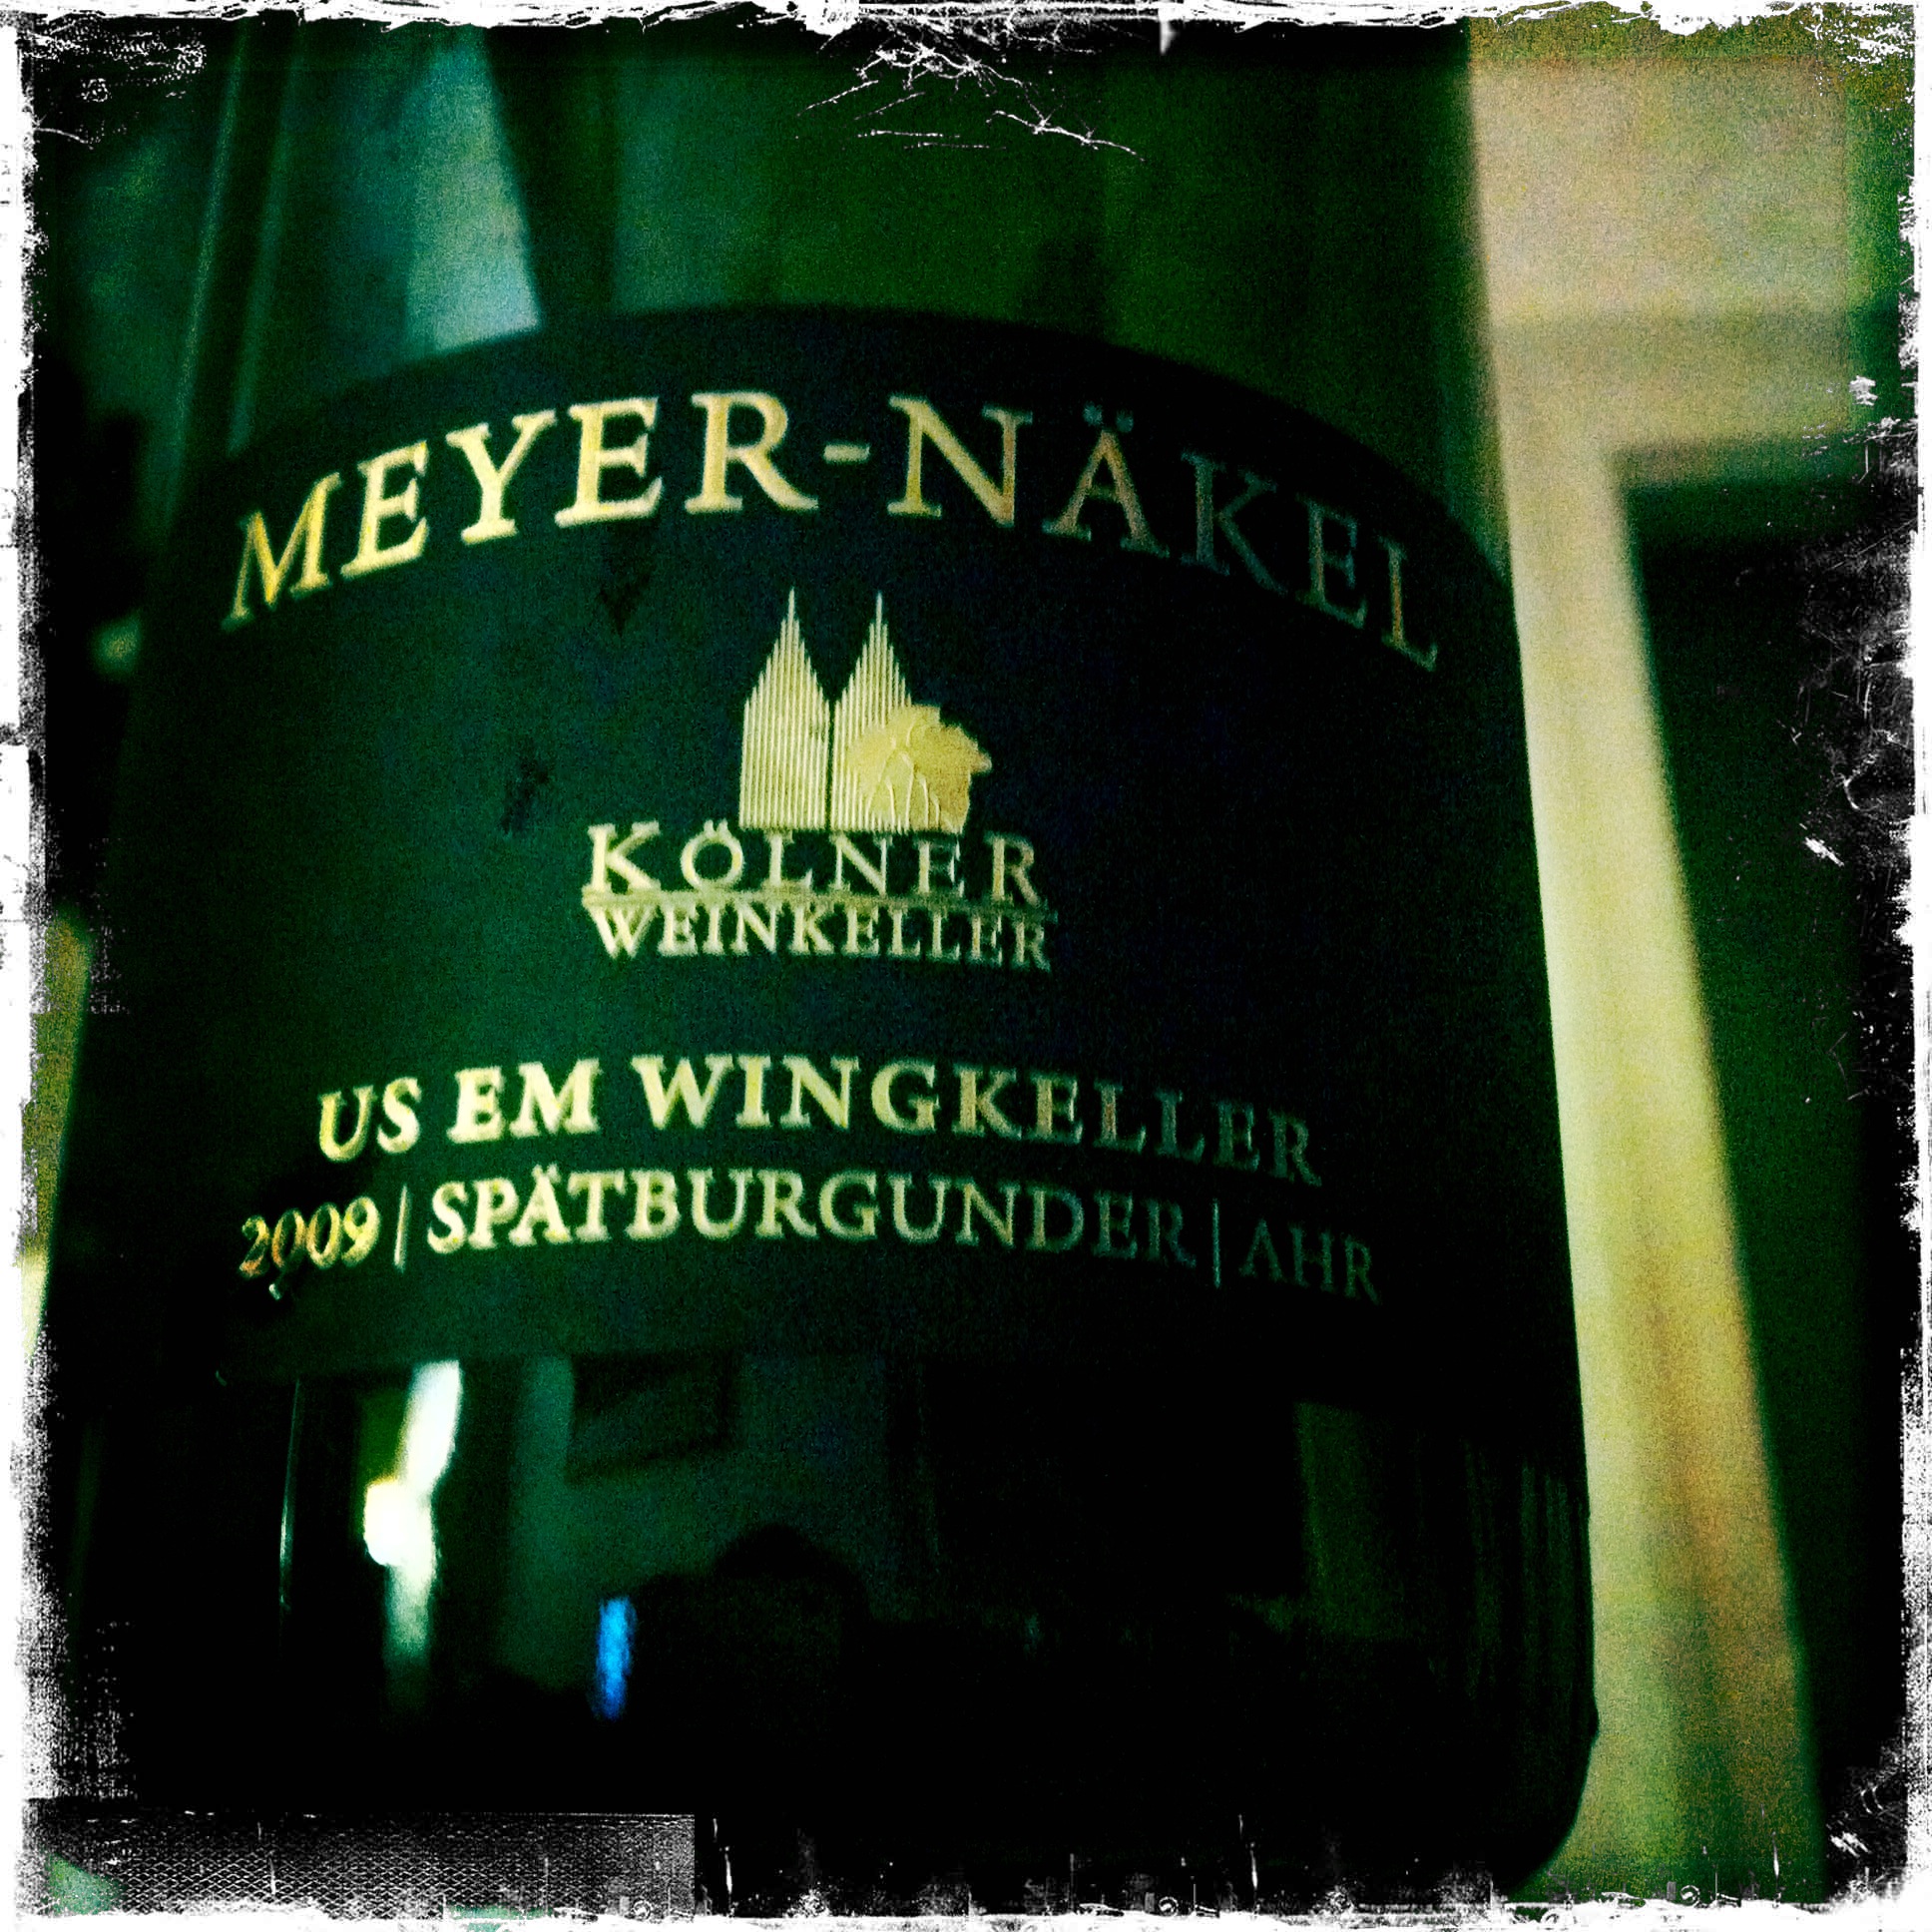 Etikett des Weines von Meyer-Näkel aus dem Kölner Weinkeller